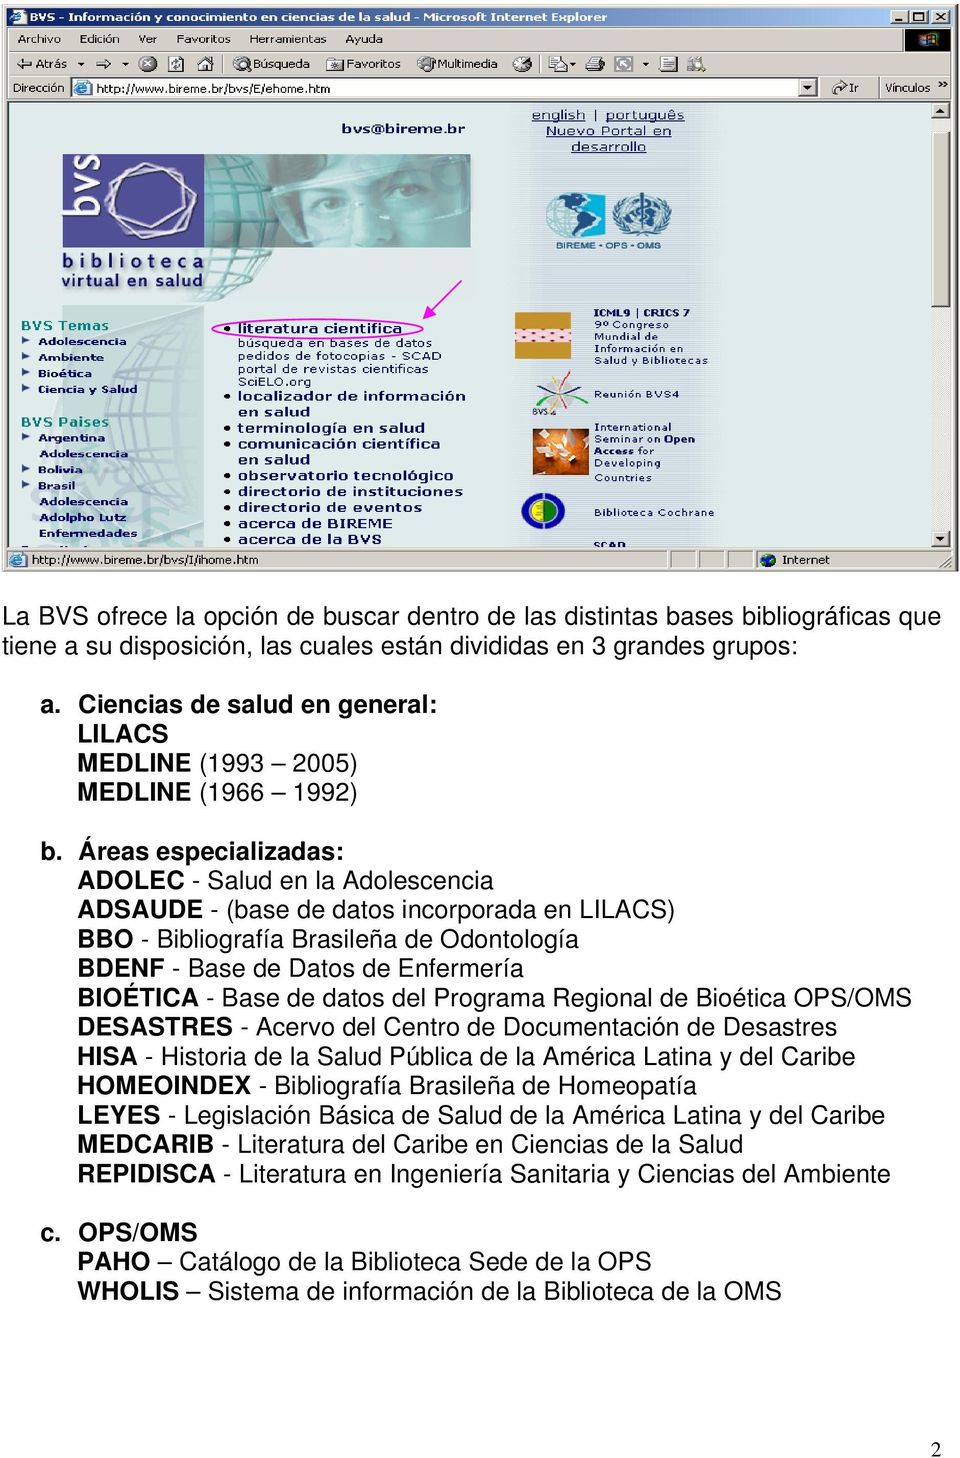 Áreas especializadas: ADOLEC - Salud en la Adolescencia ADSAUDE - (base de datos incorporada en LILACS) BBO - Bibliografía Brasileña de Odontología BDENF - Base de Datos de Enfermería BIOÉTICA - Base